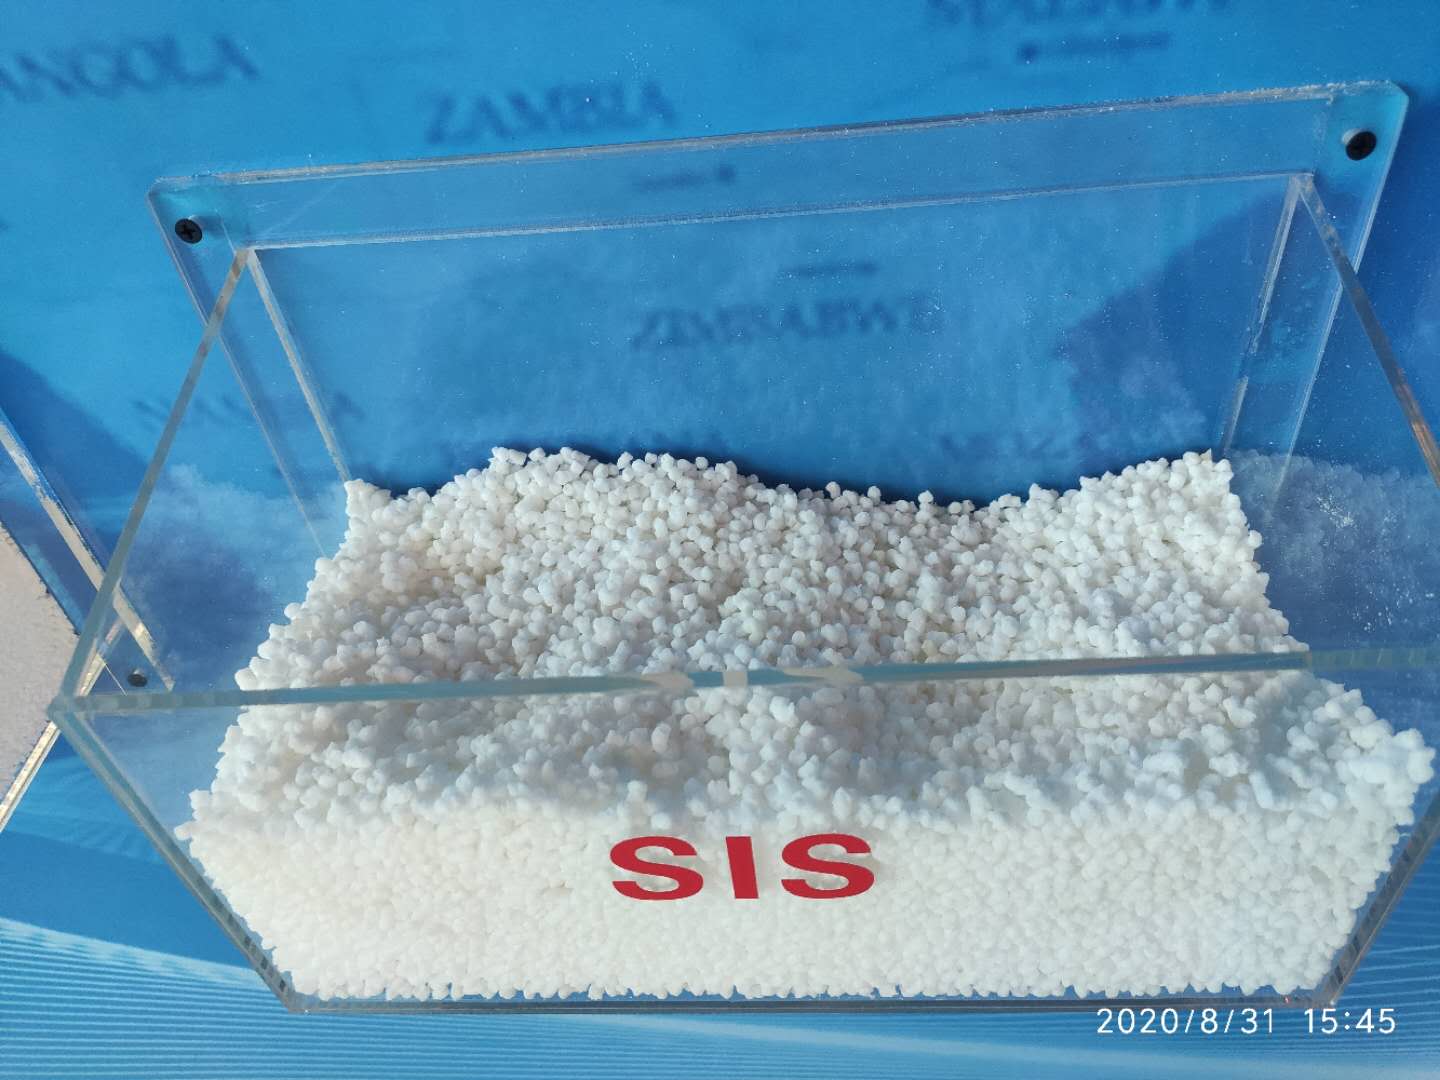 热塑性弹性体 SIS,Thermoplastic rubber SIS